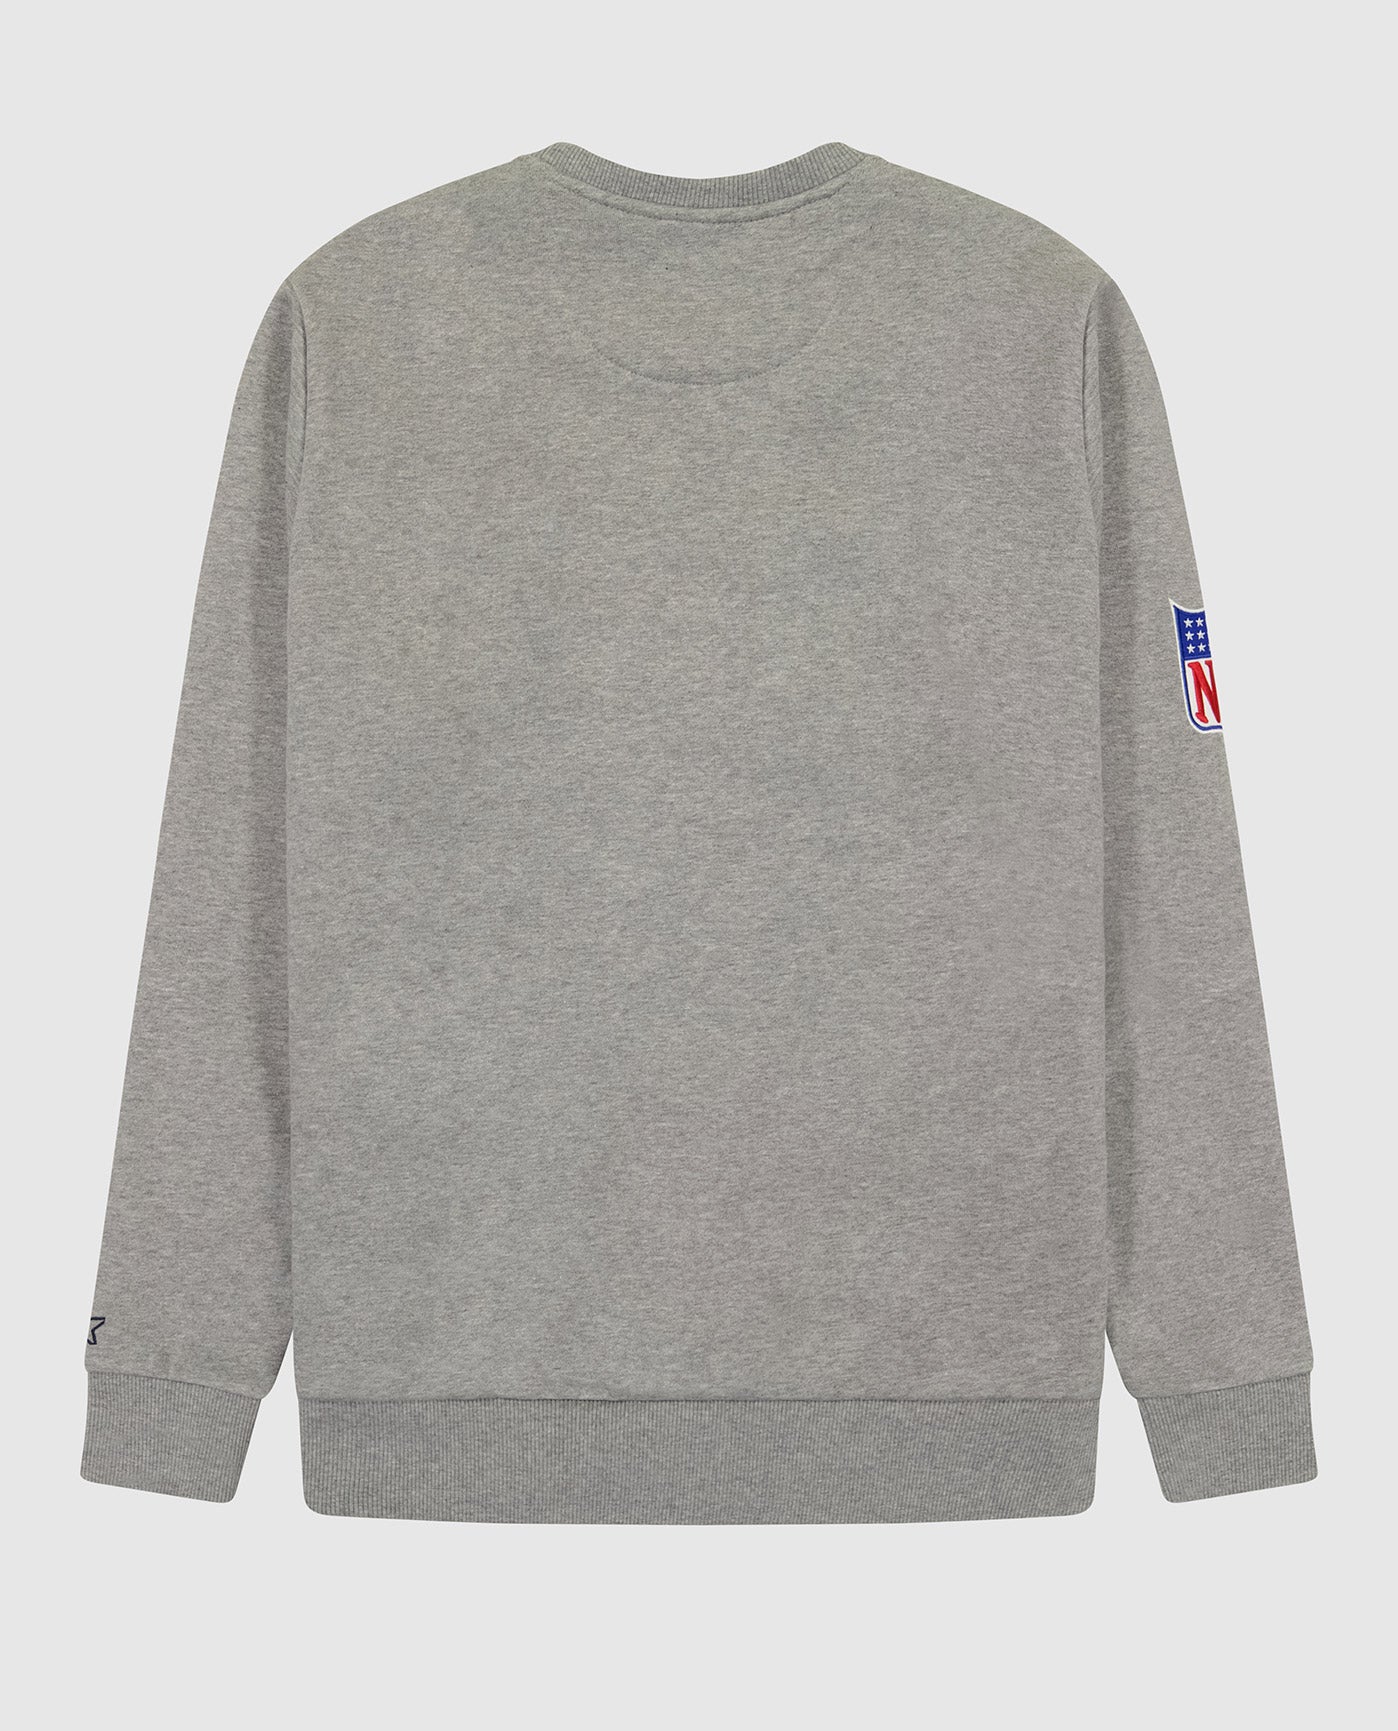 Back of New York Giants Crew Neck Sweatshirt With Zip Pockets | Giants Heather Grey